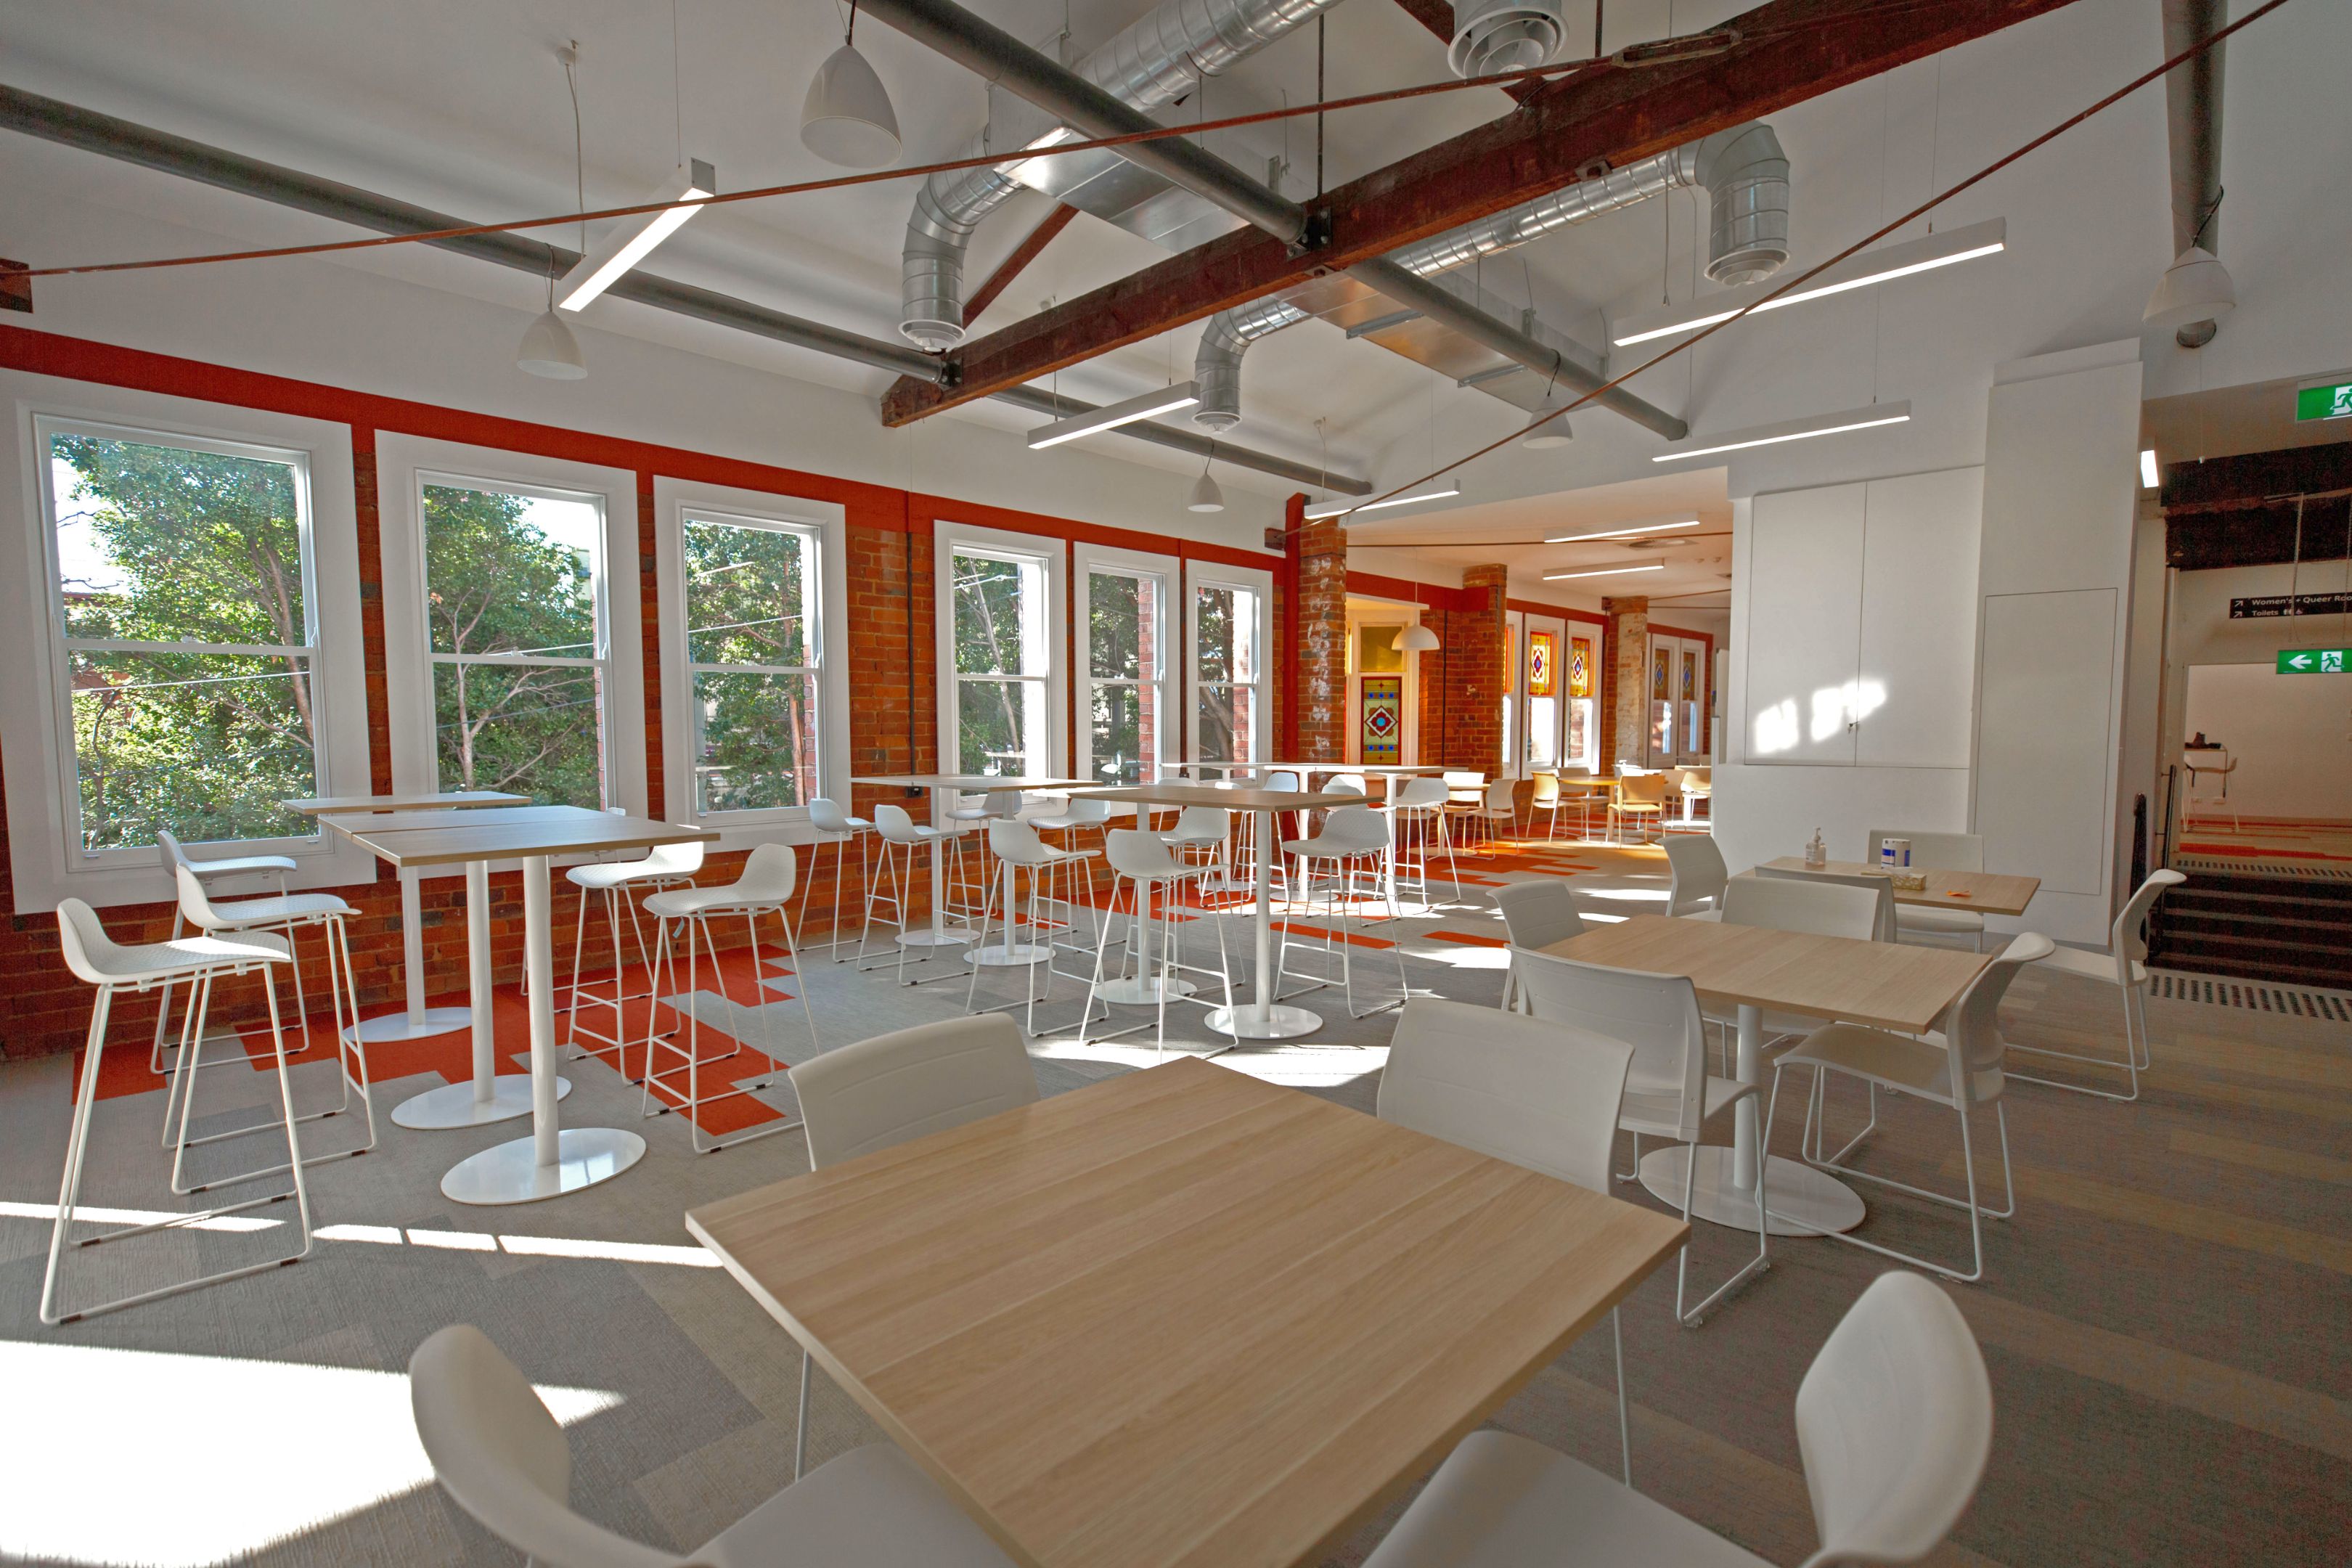 一个大的开放的学习空间，充满了自然光线，白色的椅子和轻木桌